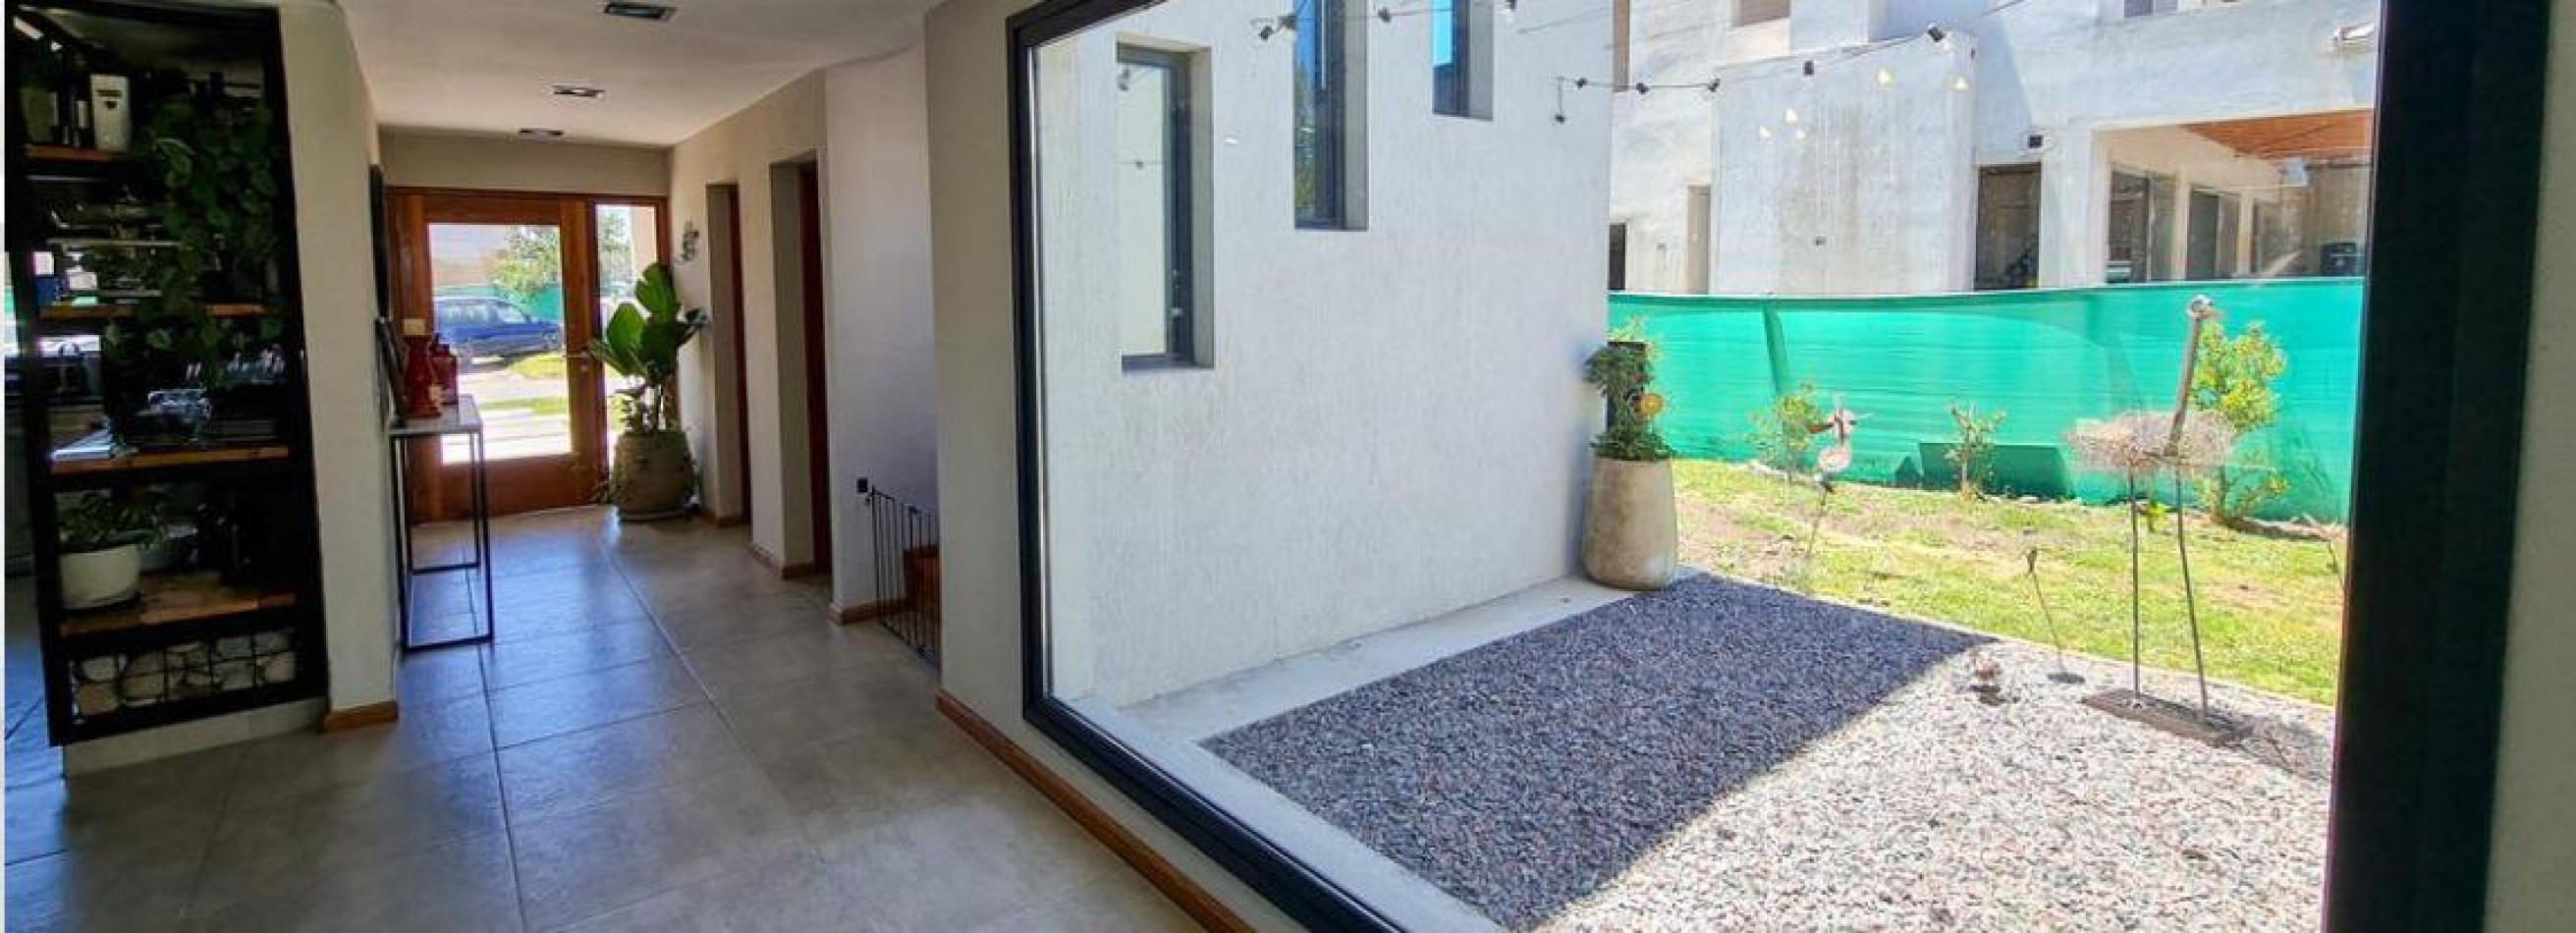 TERRALAGOS - Hermosa propiedad estilo minimalista